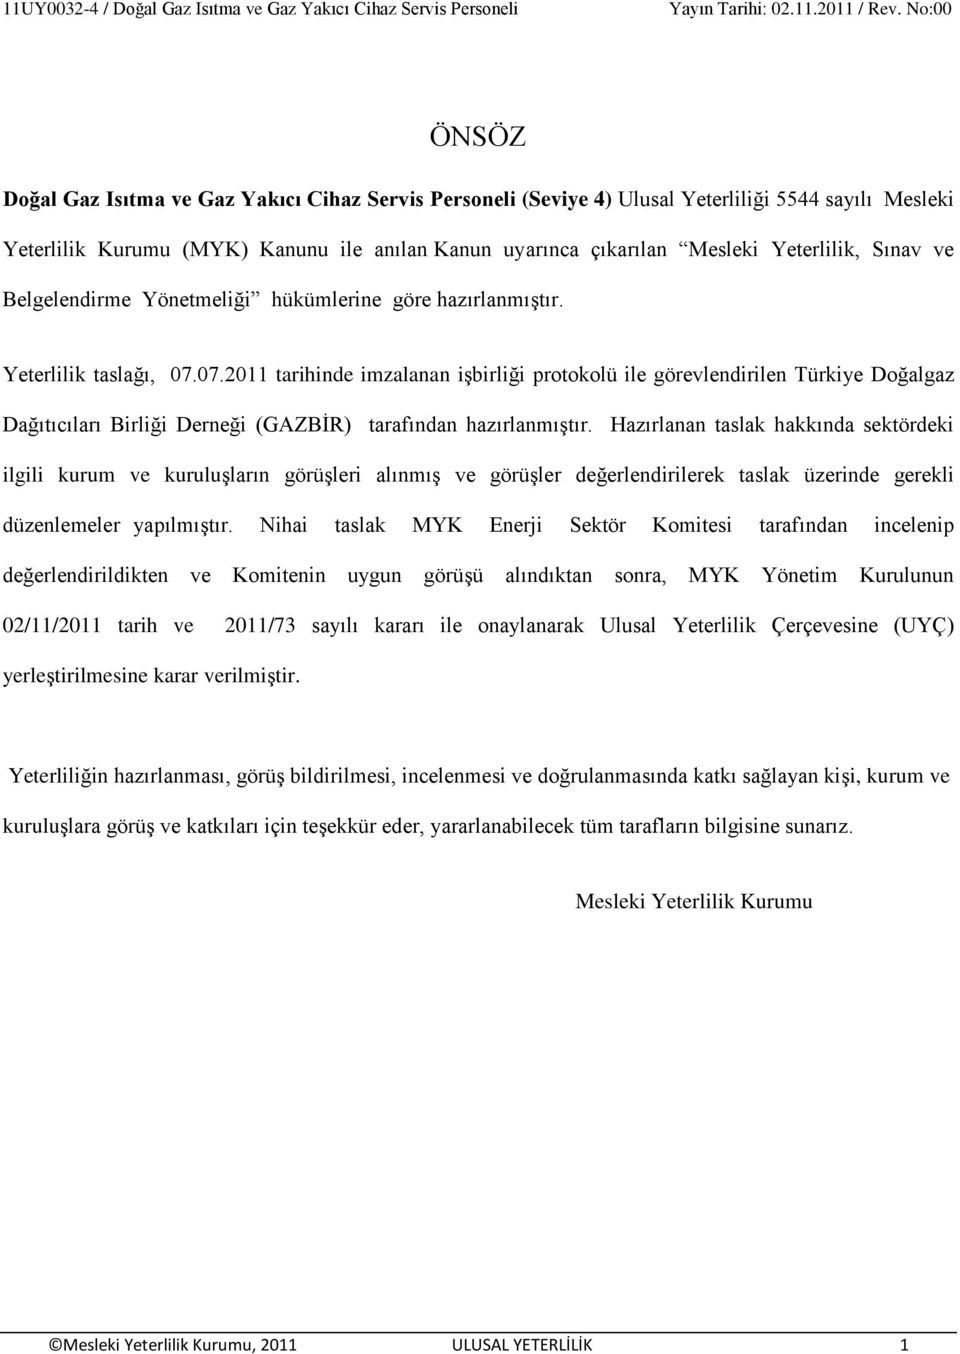 07.2011 tarihinde imzalanan iģbirliği protokolü ile görevlendirilen Türkiye Doğalgaz Dağıtıcıları Birliği Derneği (GAZBĠR) tarafından hazırlanmıģtır.